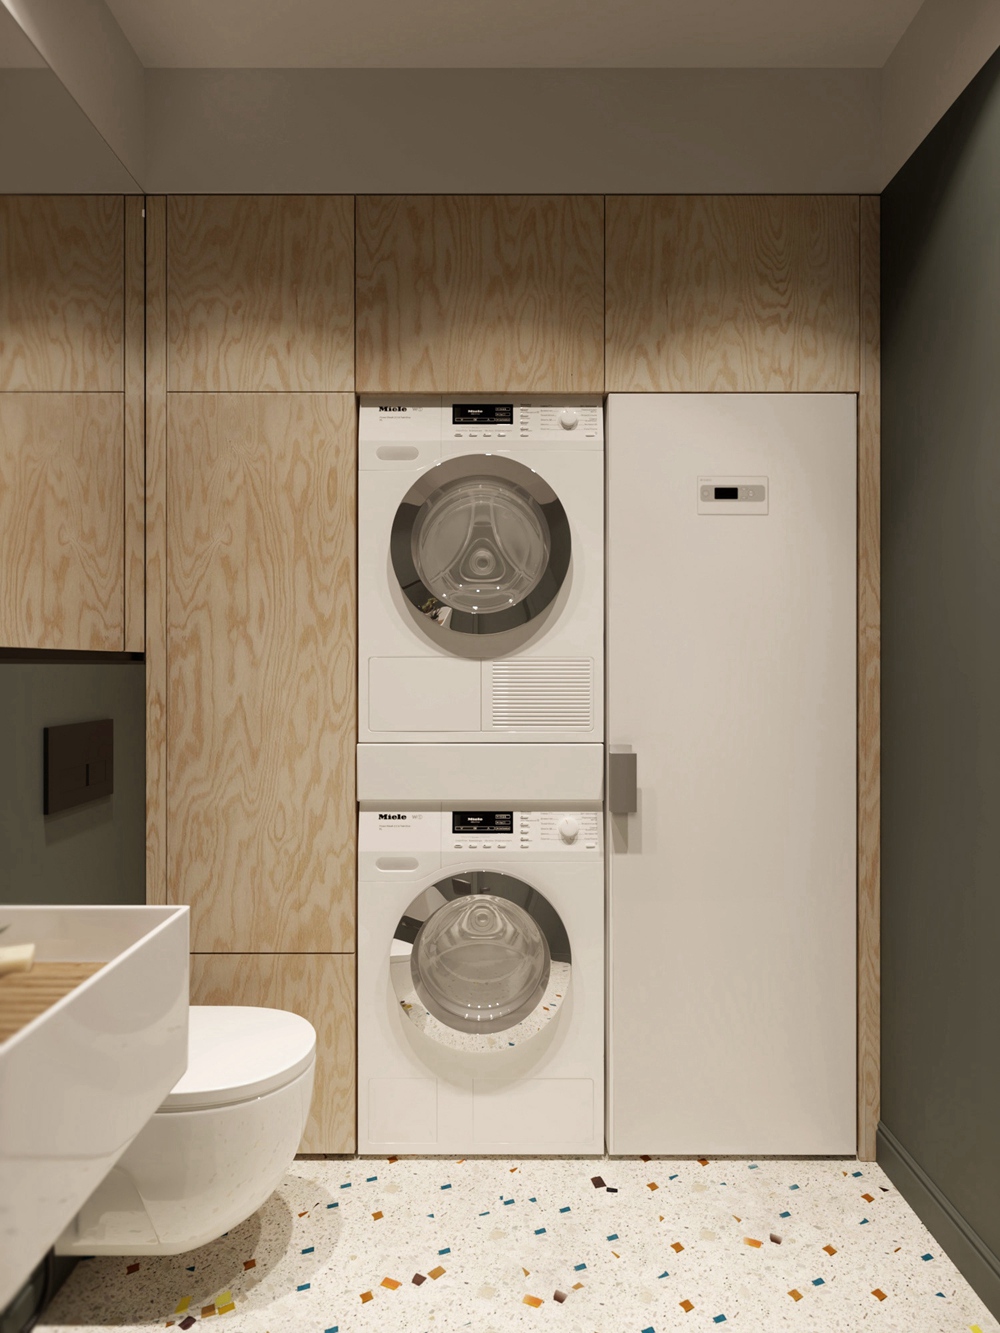 木质元素赋予空间柔和的滤镜，嵌入式洗衣机与整体色调呼应，营造出主人对品质的追求。